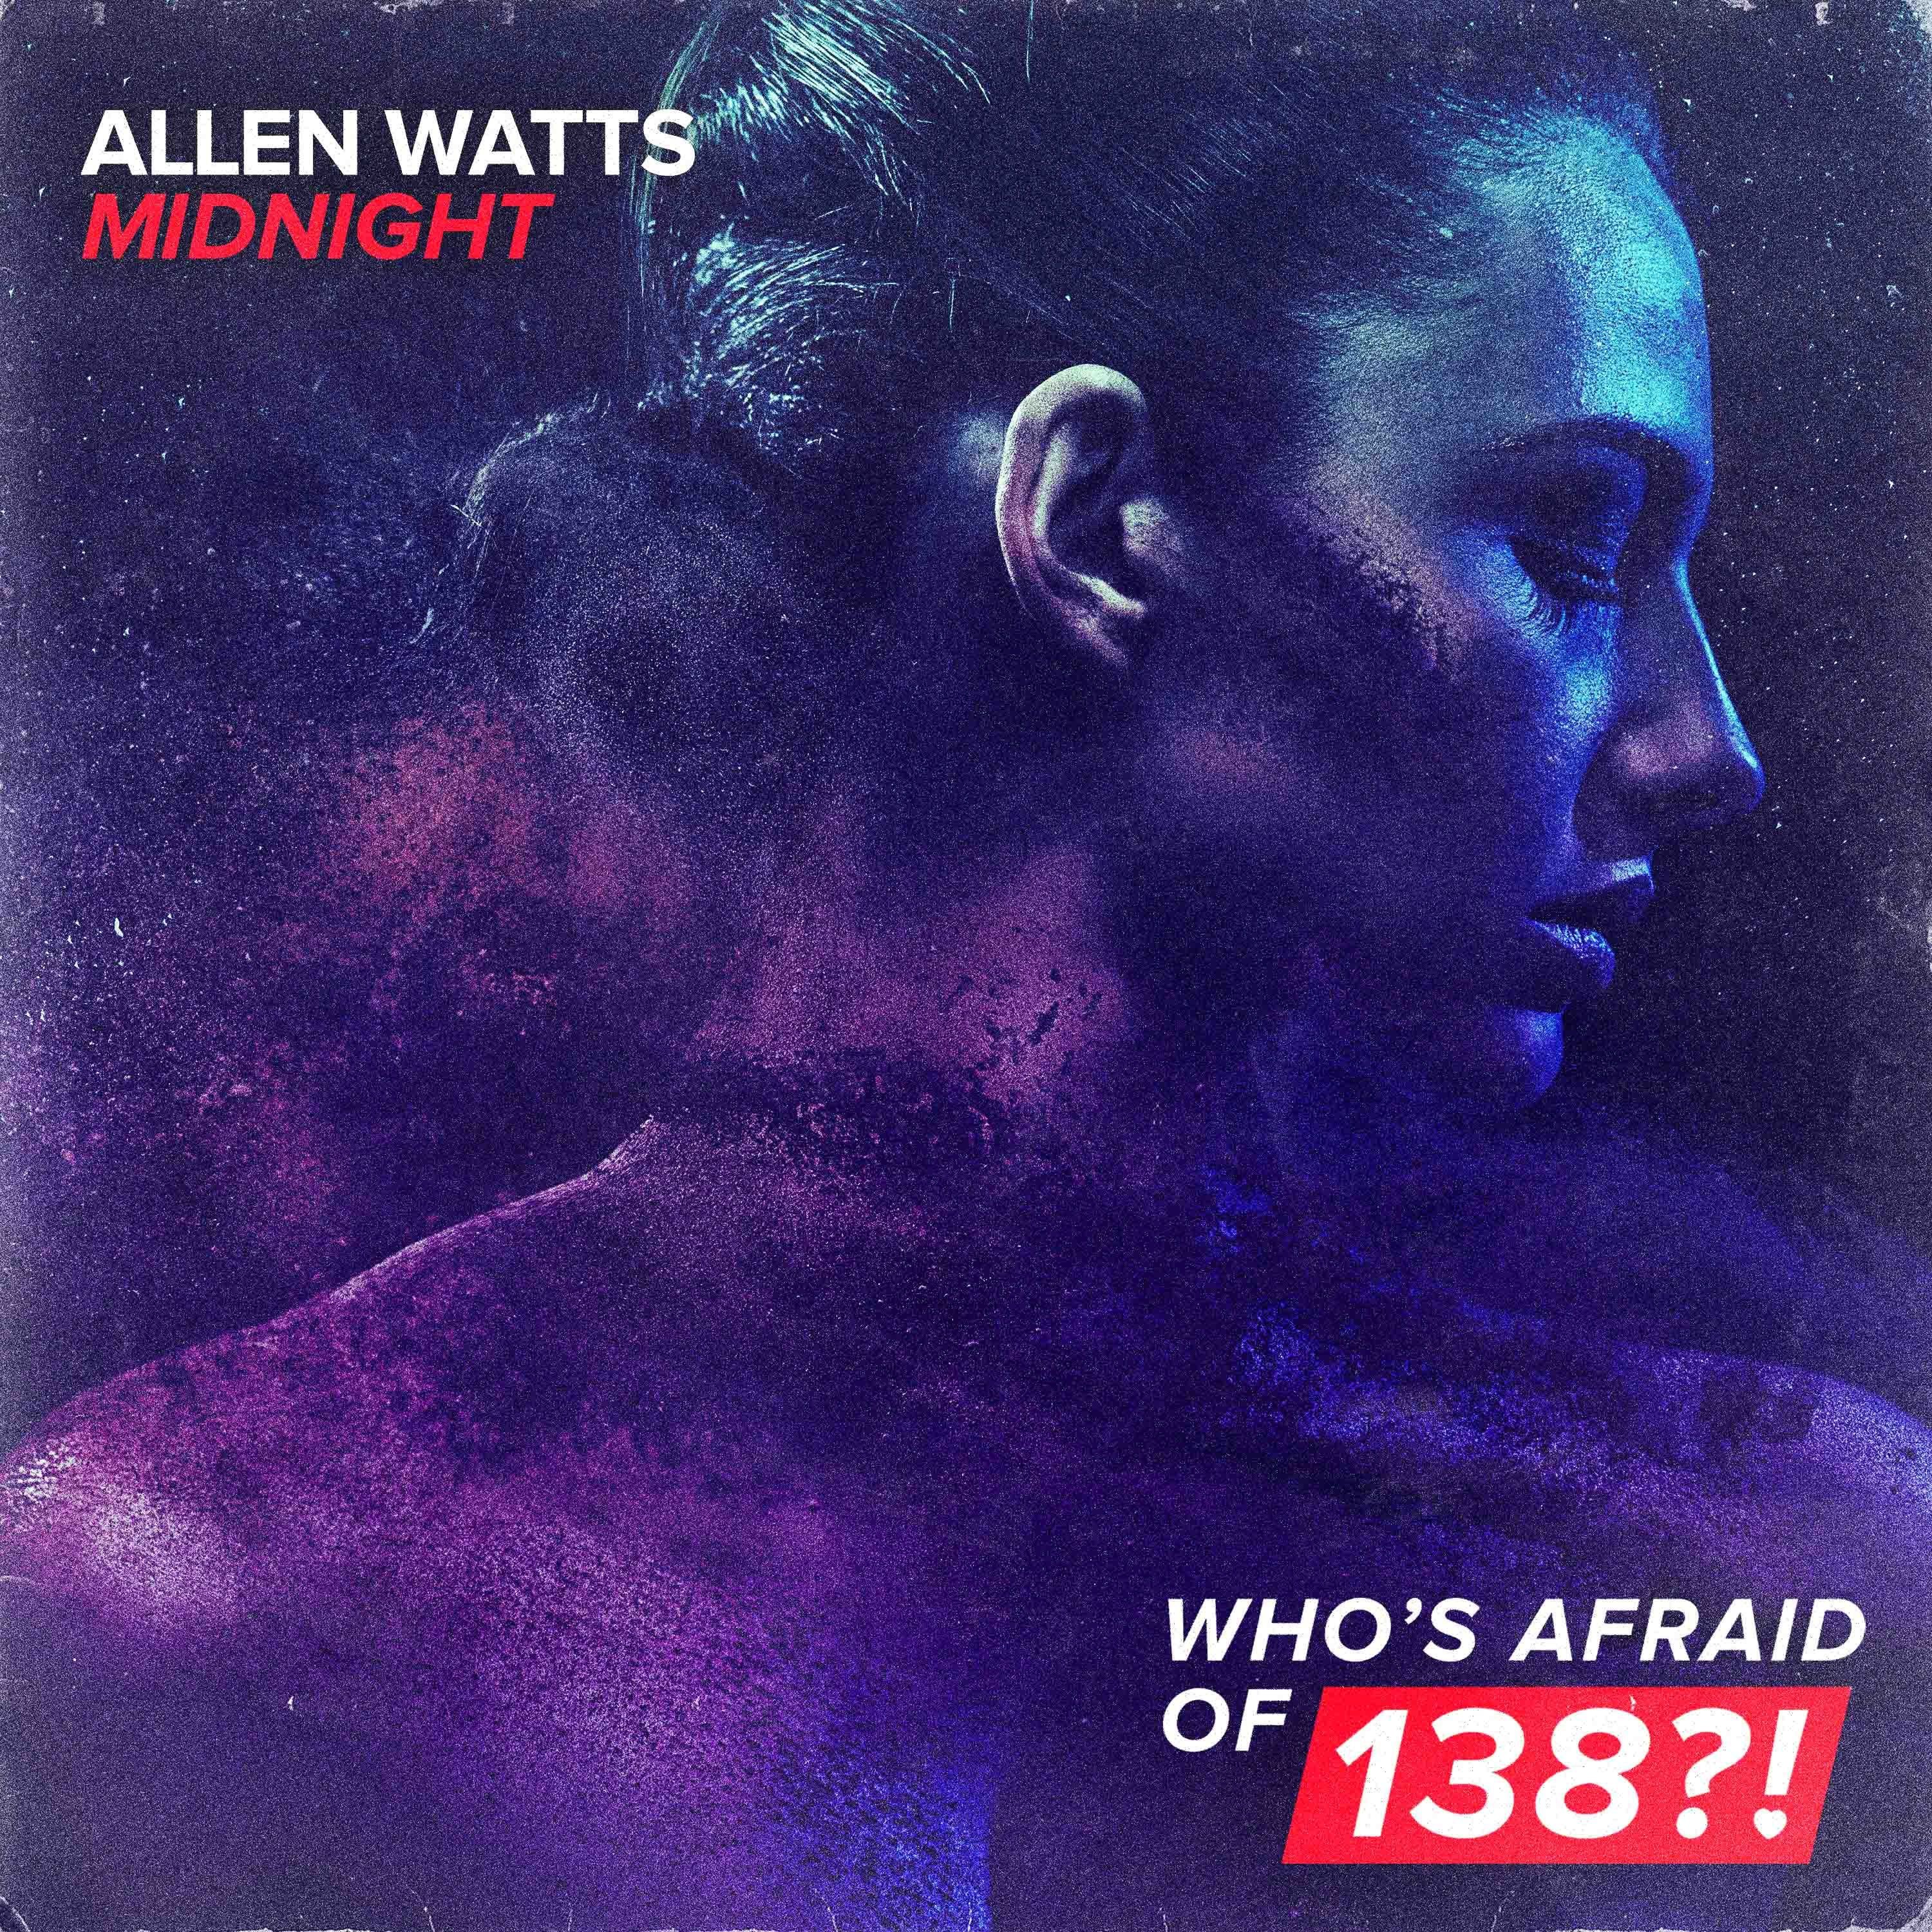 Allen watts. Allen Watts - Impulse. Allen Watts - Shadows. Allen Watts - Dynamo. Allen Watts Dynamo Extended.